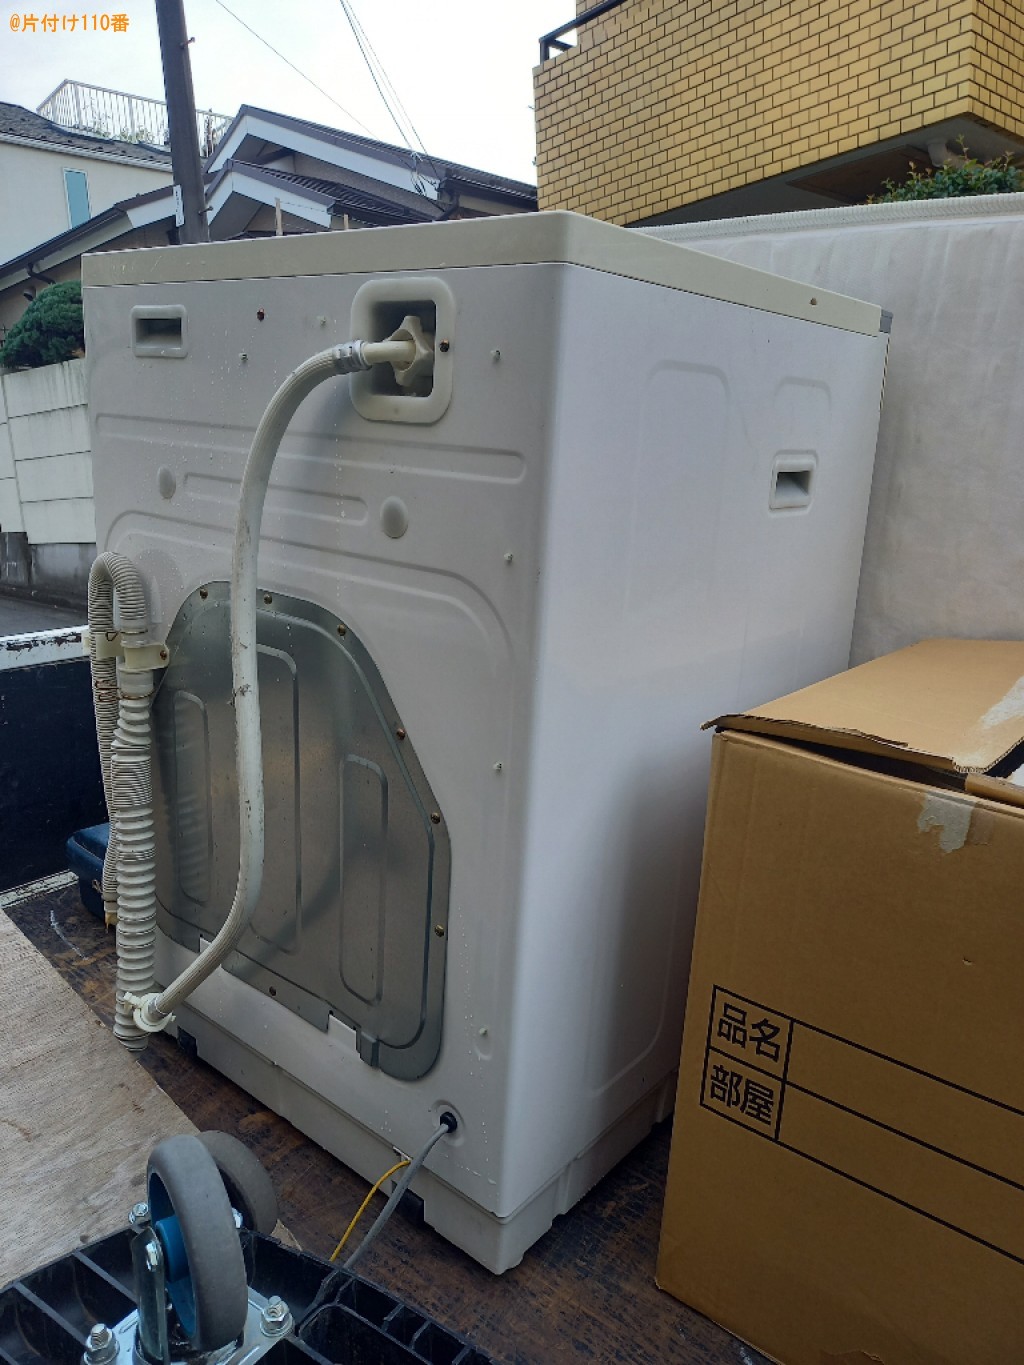 【世田谷区】ドラム式乾燥機付き洗濯機の回収・処分ご依頼